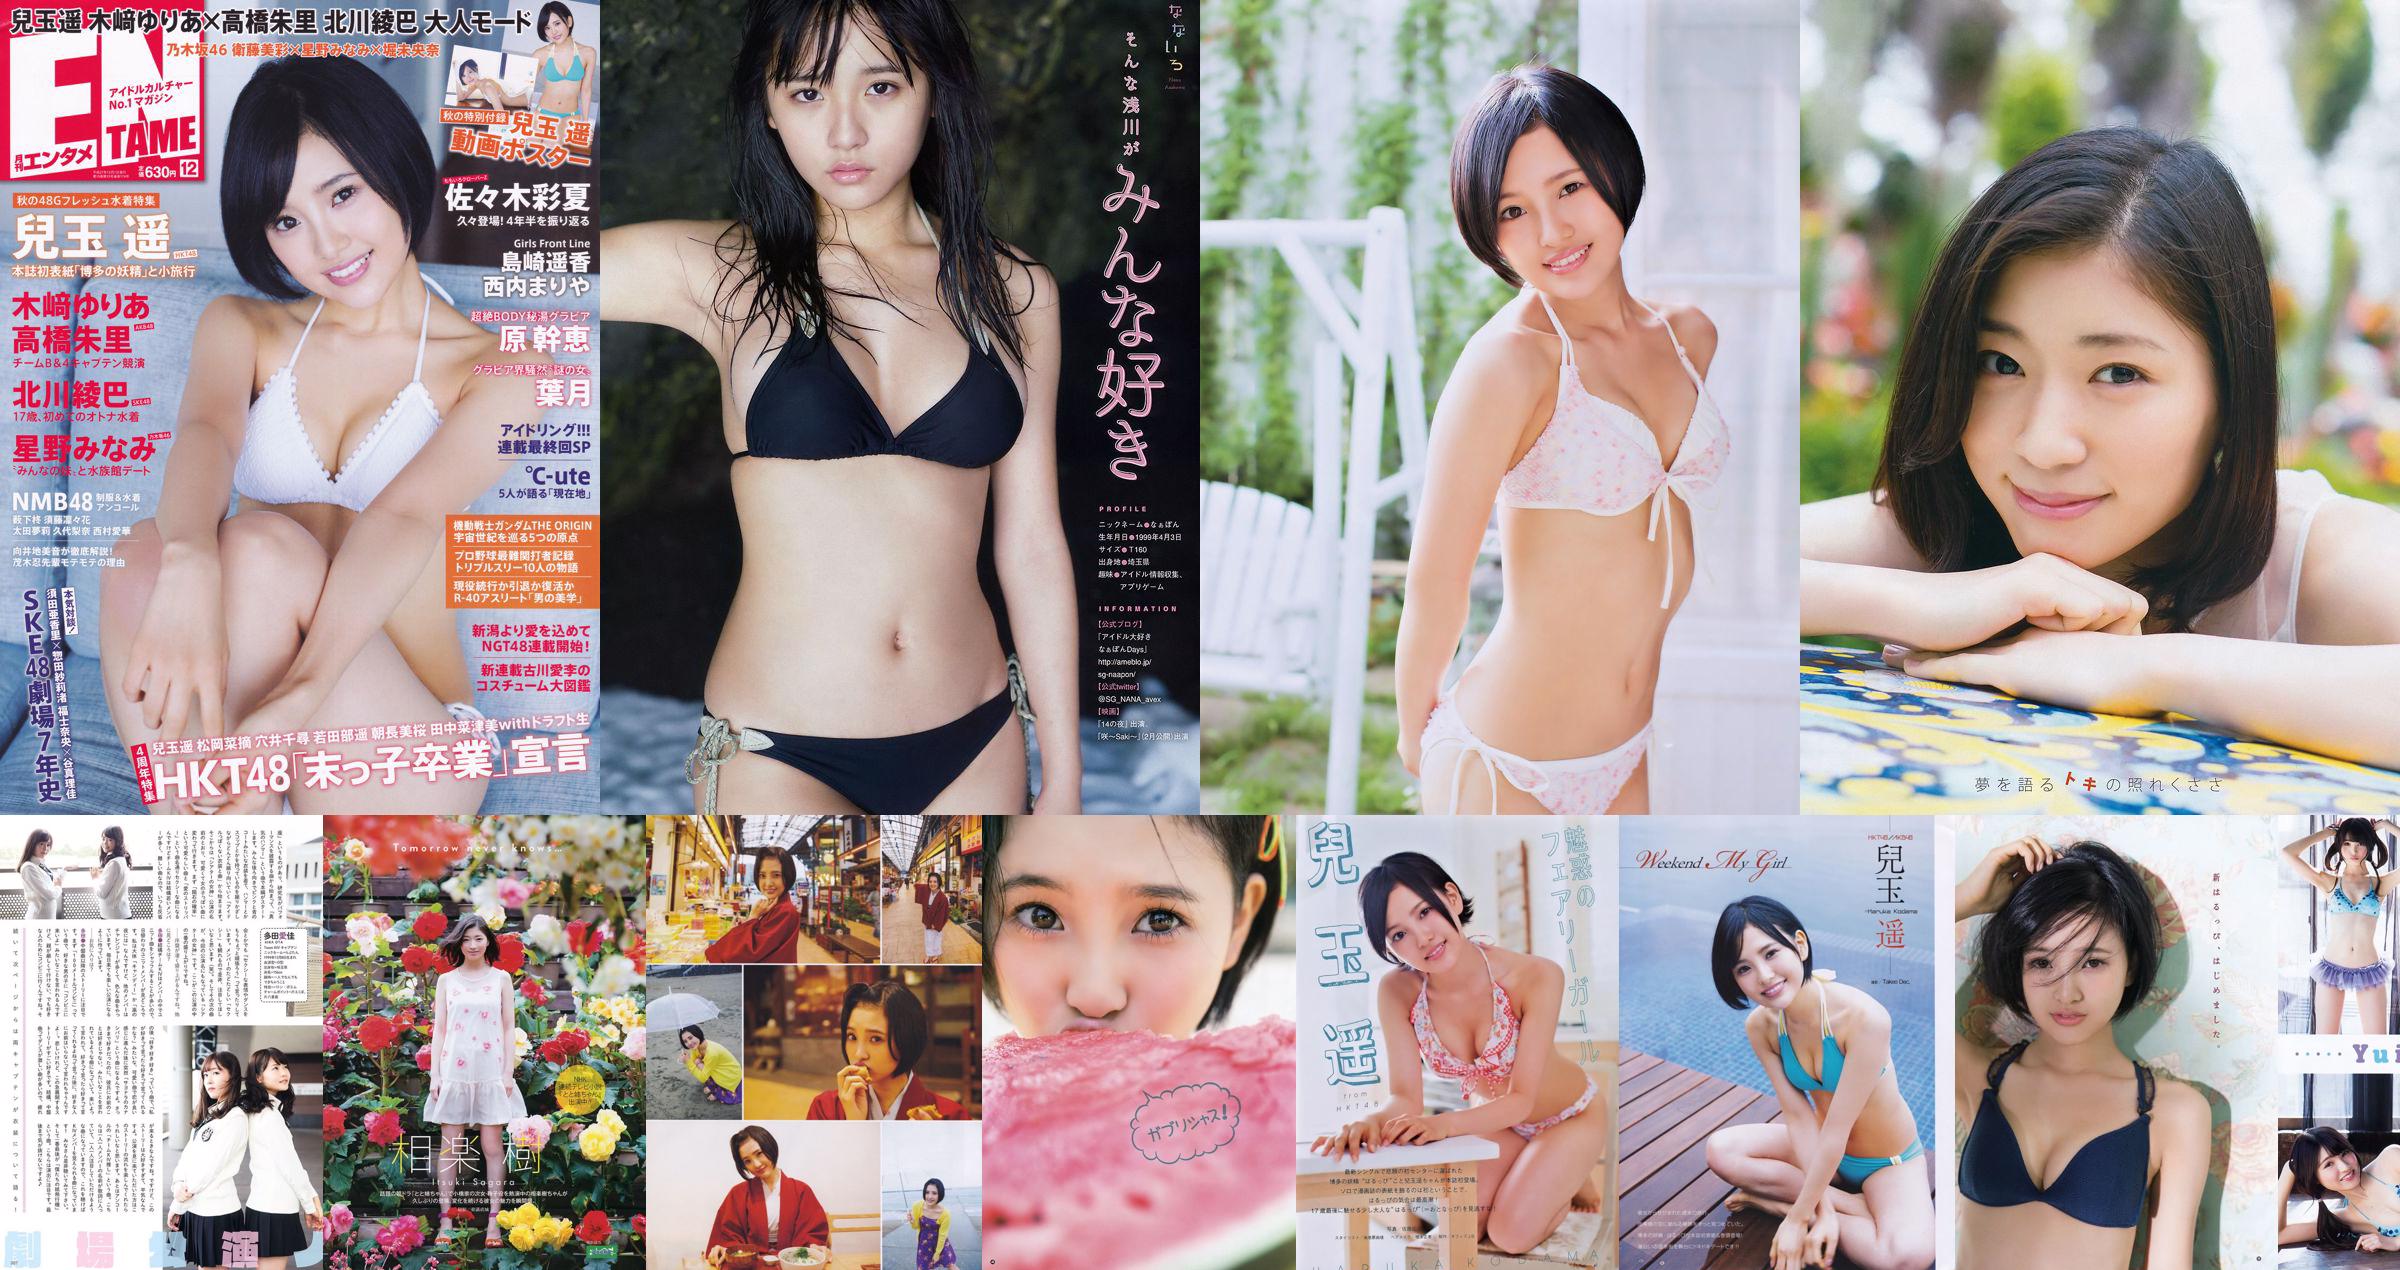 [Young Gangan] Haruka Kodama Itsuki Sagara 2016 No.11 Photo Magazine No.632ced Página 2